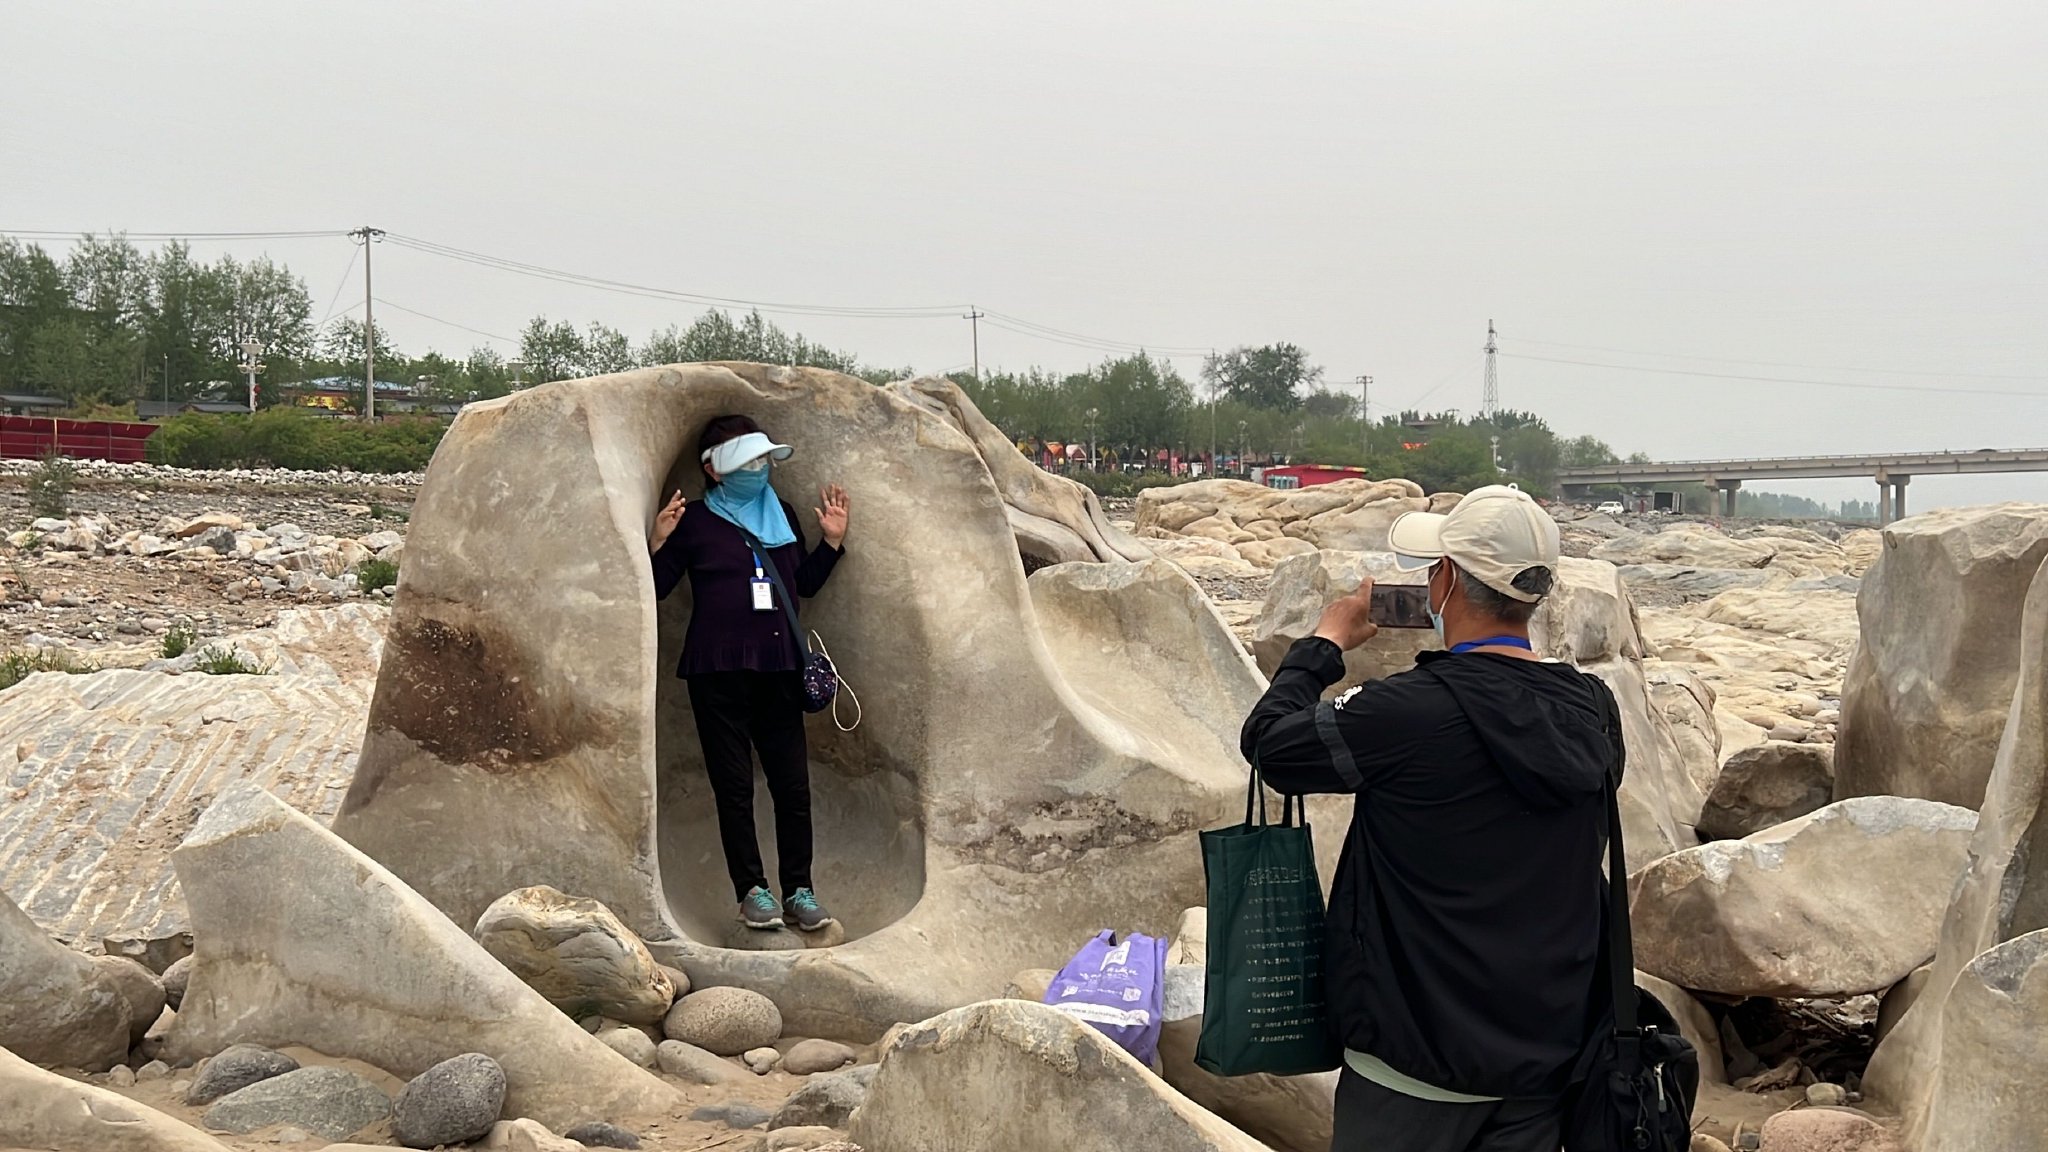 遊客在巨石灘景觀處打卡拍照。新京報記者 陳璐 攝